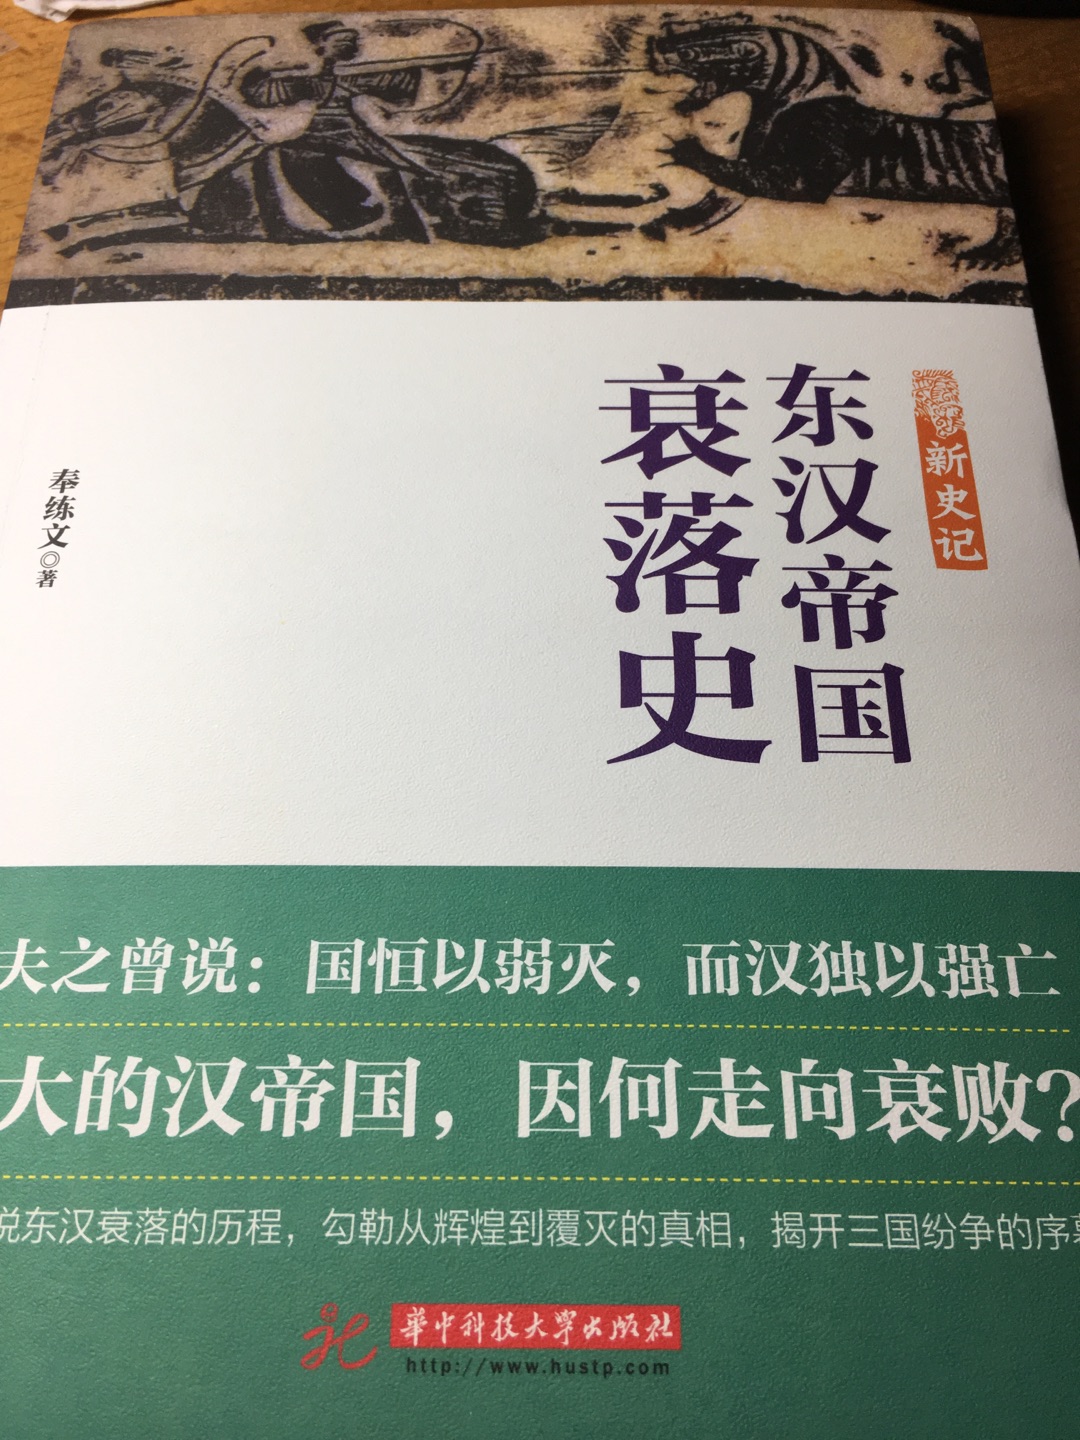 清晰梳理东汉末年的历史，剖析汉家天下分崩根源，可读性强！